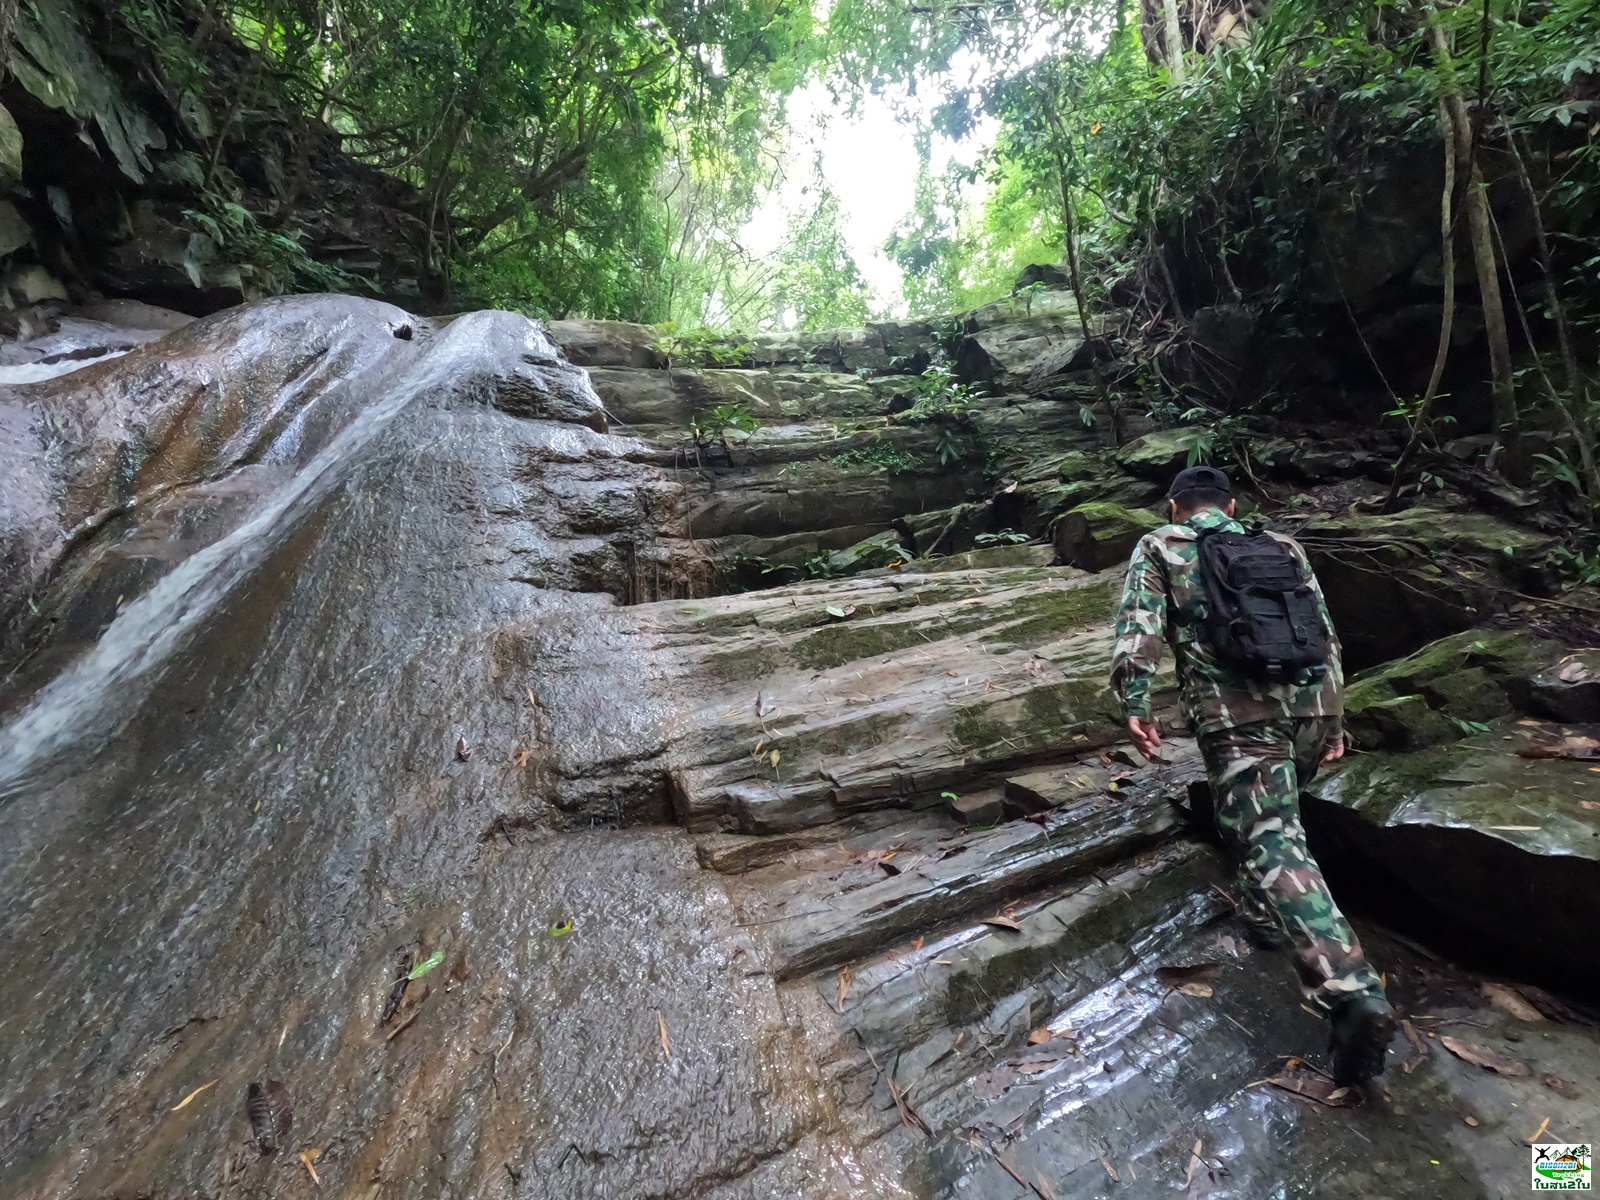 ทัวร์เดินป่าแค้มป์ปิ้งท่องเที่ยวทริปพุเตย น้ำตกตะเพินคี่ใหญ่ น้ำตกตะเพินคี่น้อย เขาเทวดา